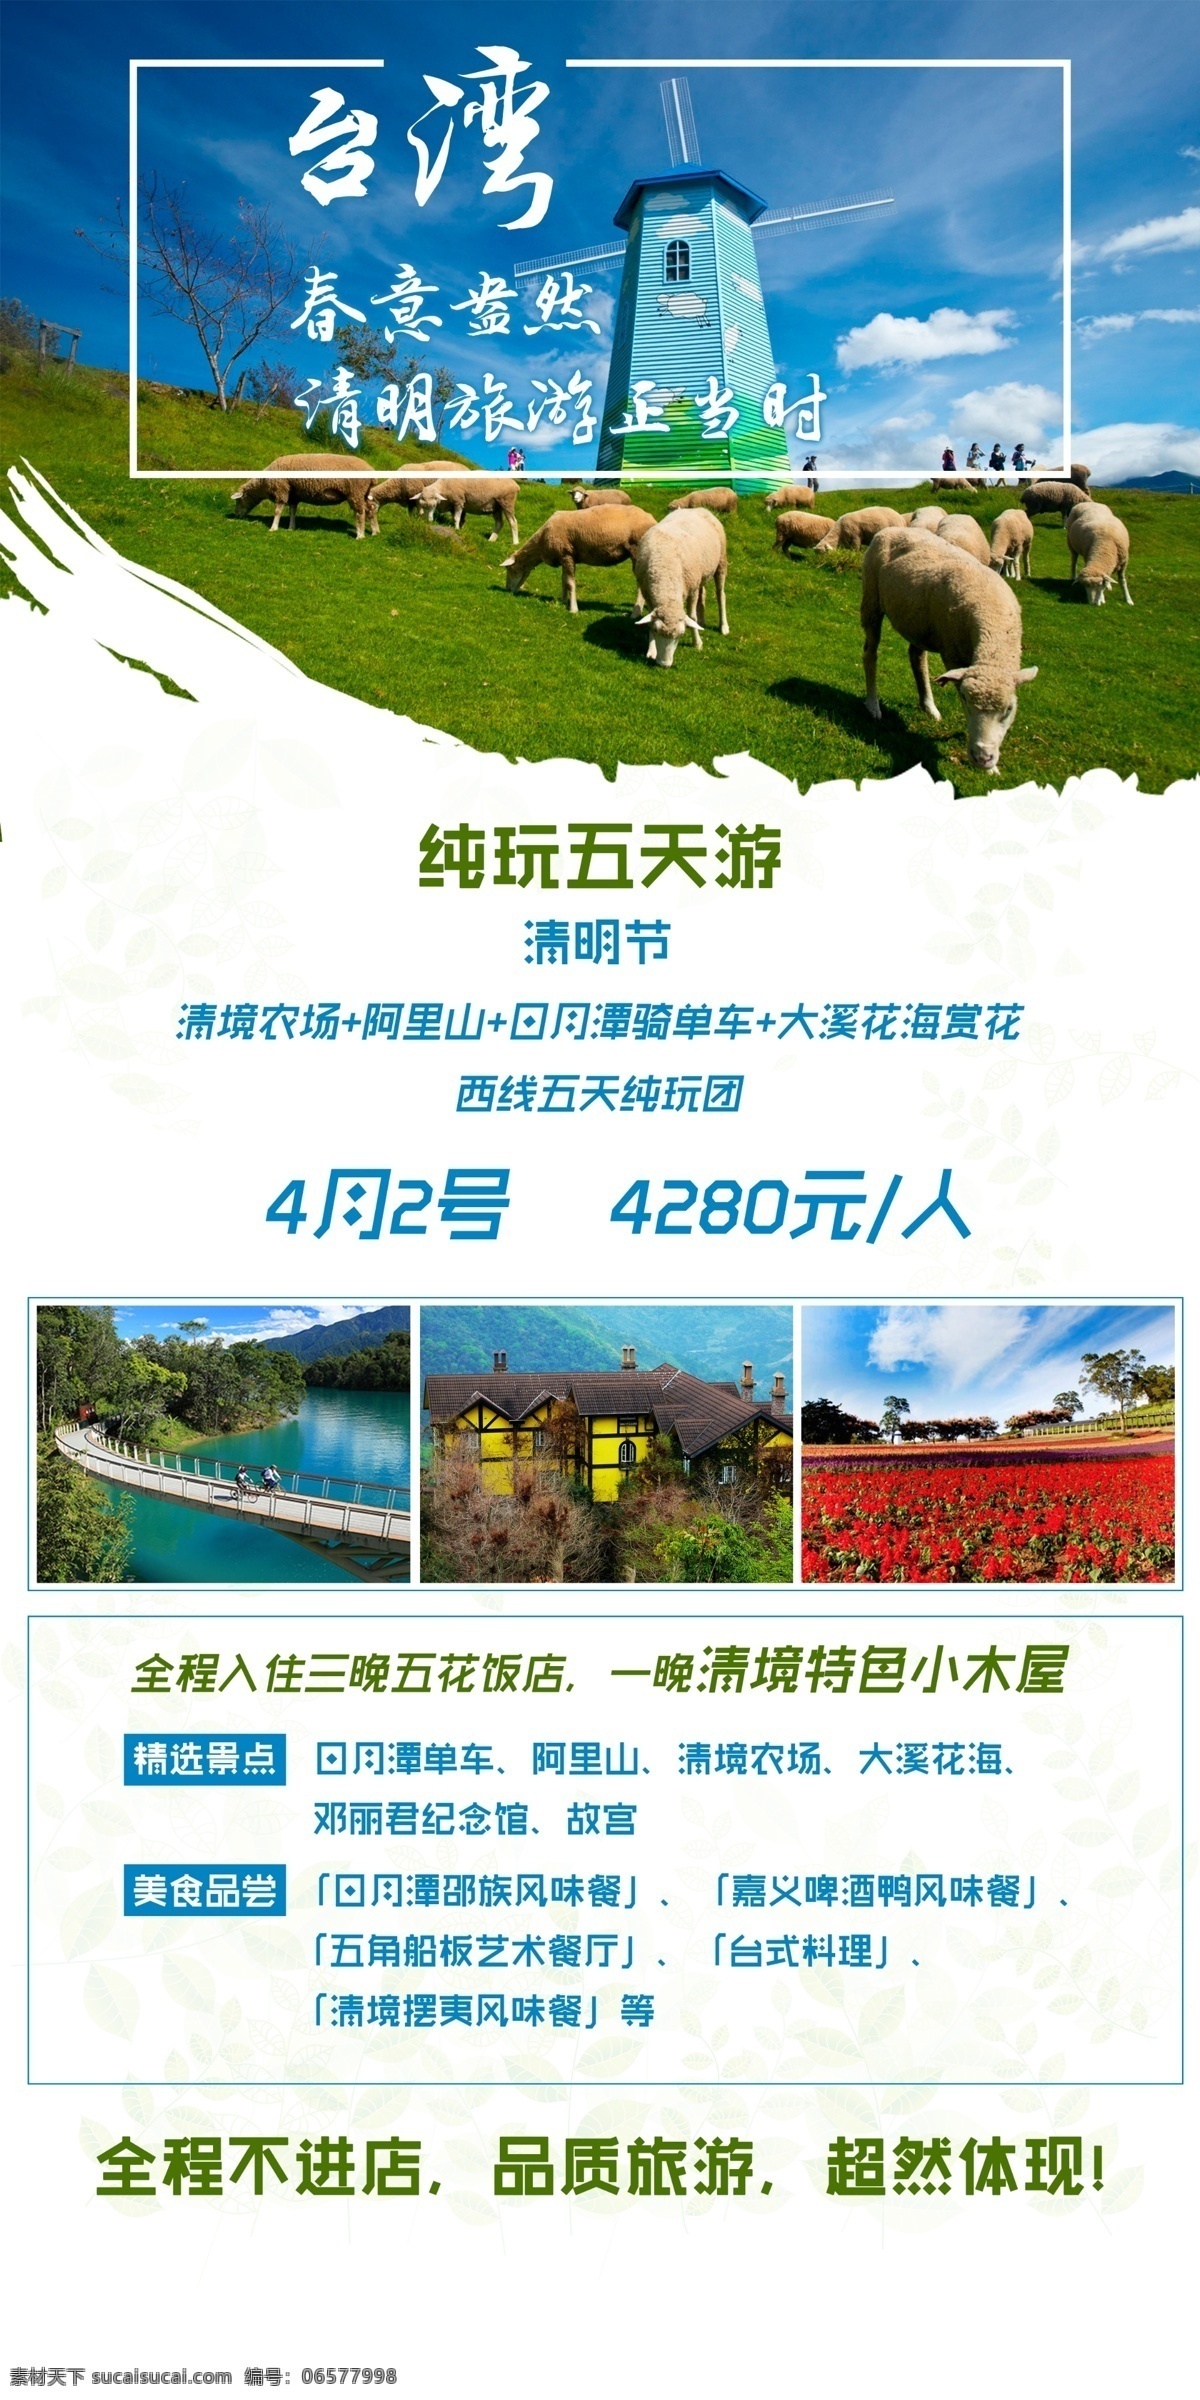 春天台湾旅游 春天 清明节 台湾 旅游 品质 白色